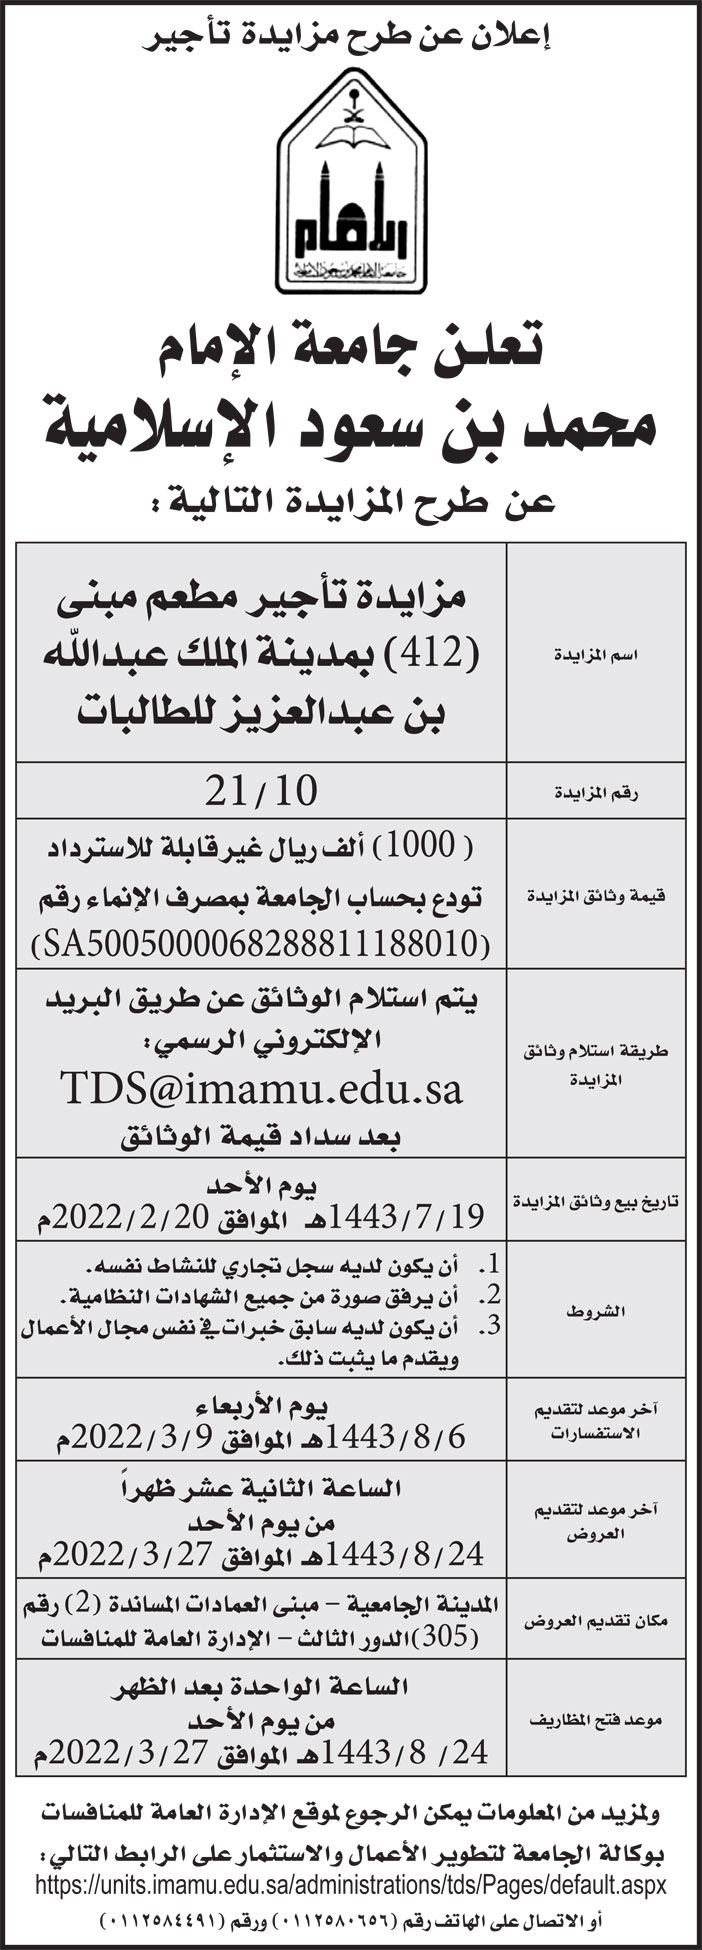 جامعة الإمام محمد بن سعود الإسلامية تمدد طرح مزايدة تأجير مطعم مبنى (412) بمدينة الملك عبدالله بن عبدالعزيز للطالبات 